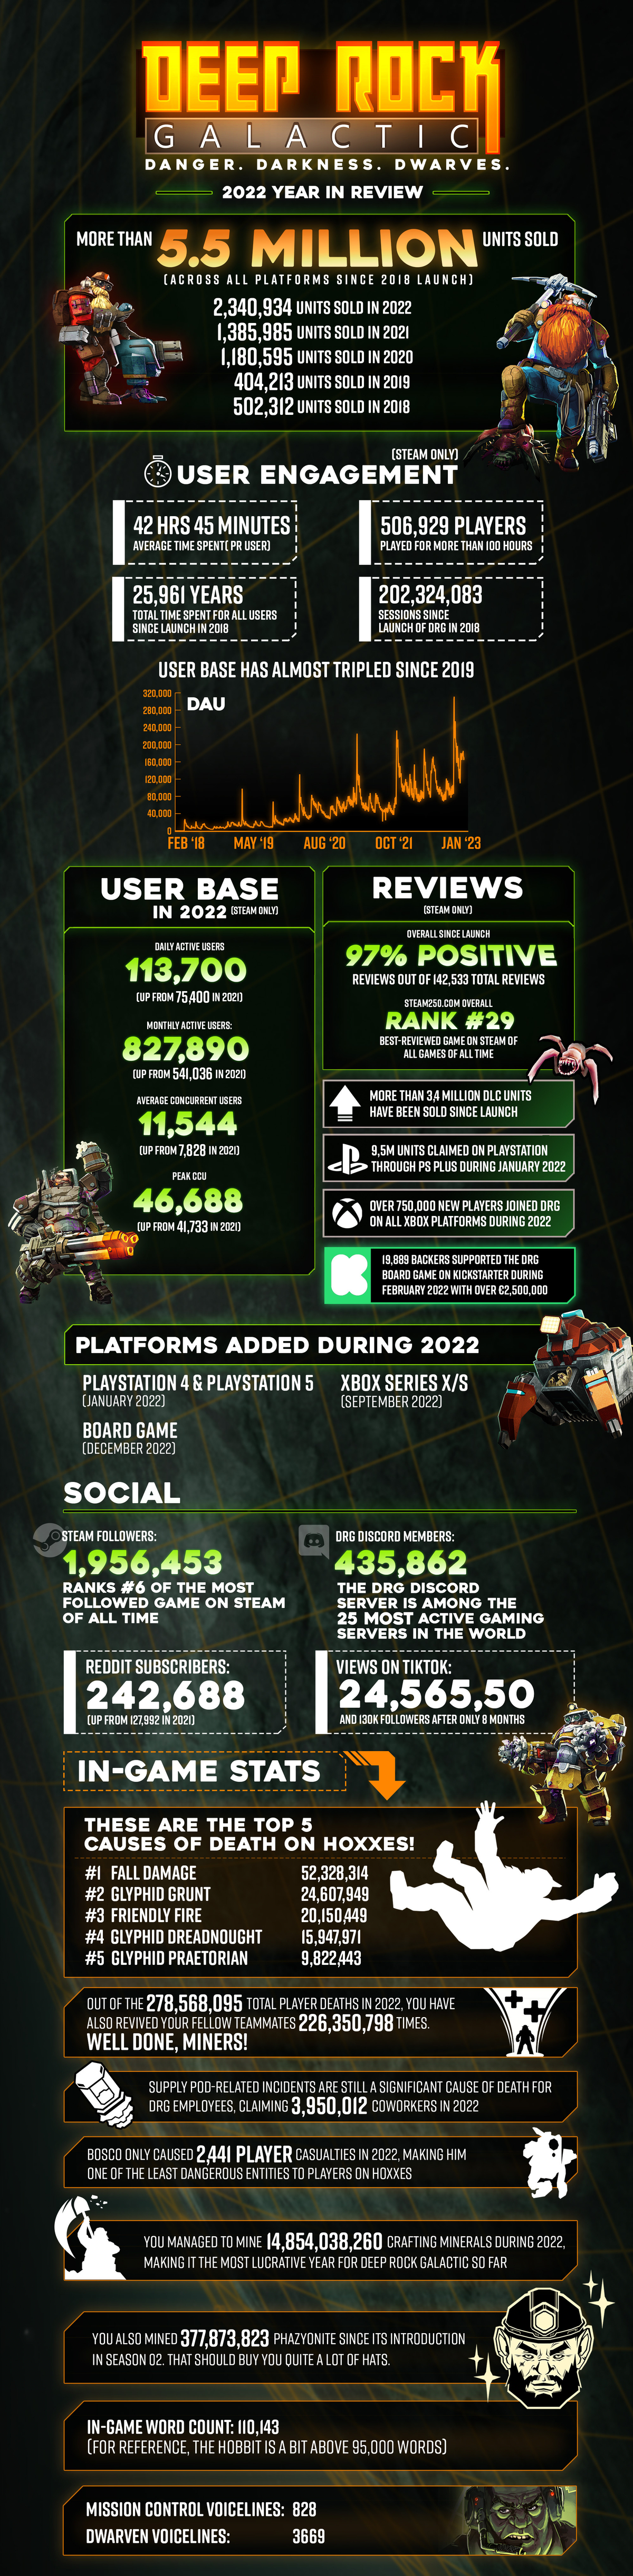 Разработчики Deep Rock Galactic похвалились достижениями игры — 5,5 млн копий и не только